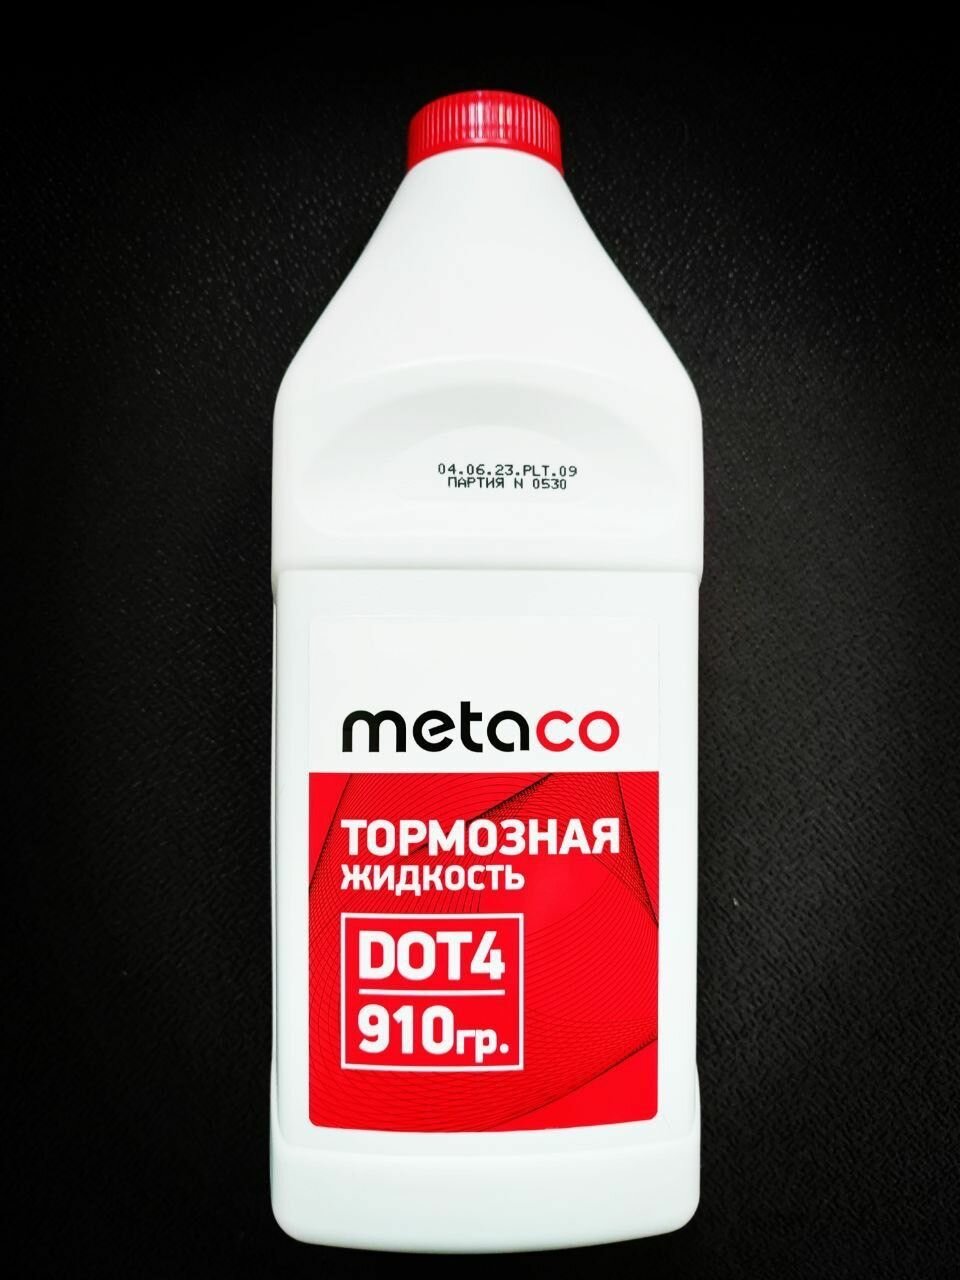 Тормозная жидкость ДОТ4 (DOT4) METACO 998-2002 910 гр.